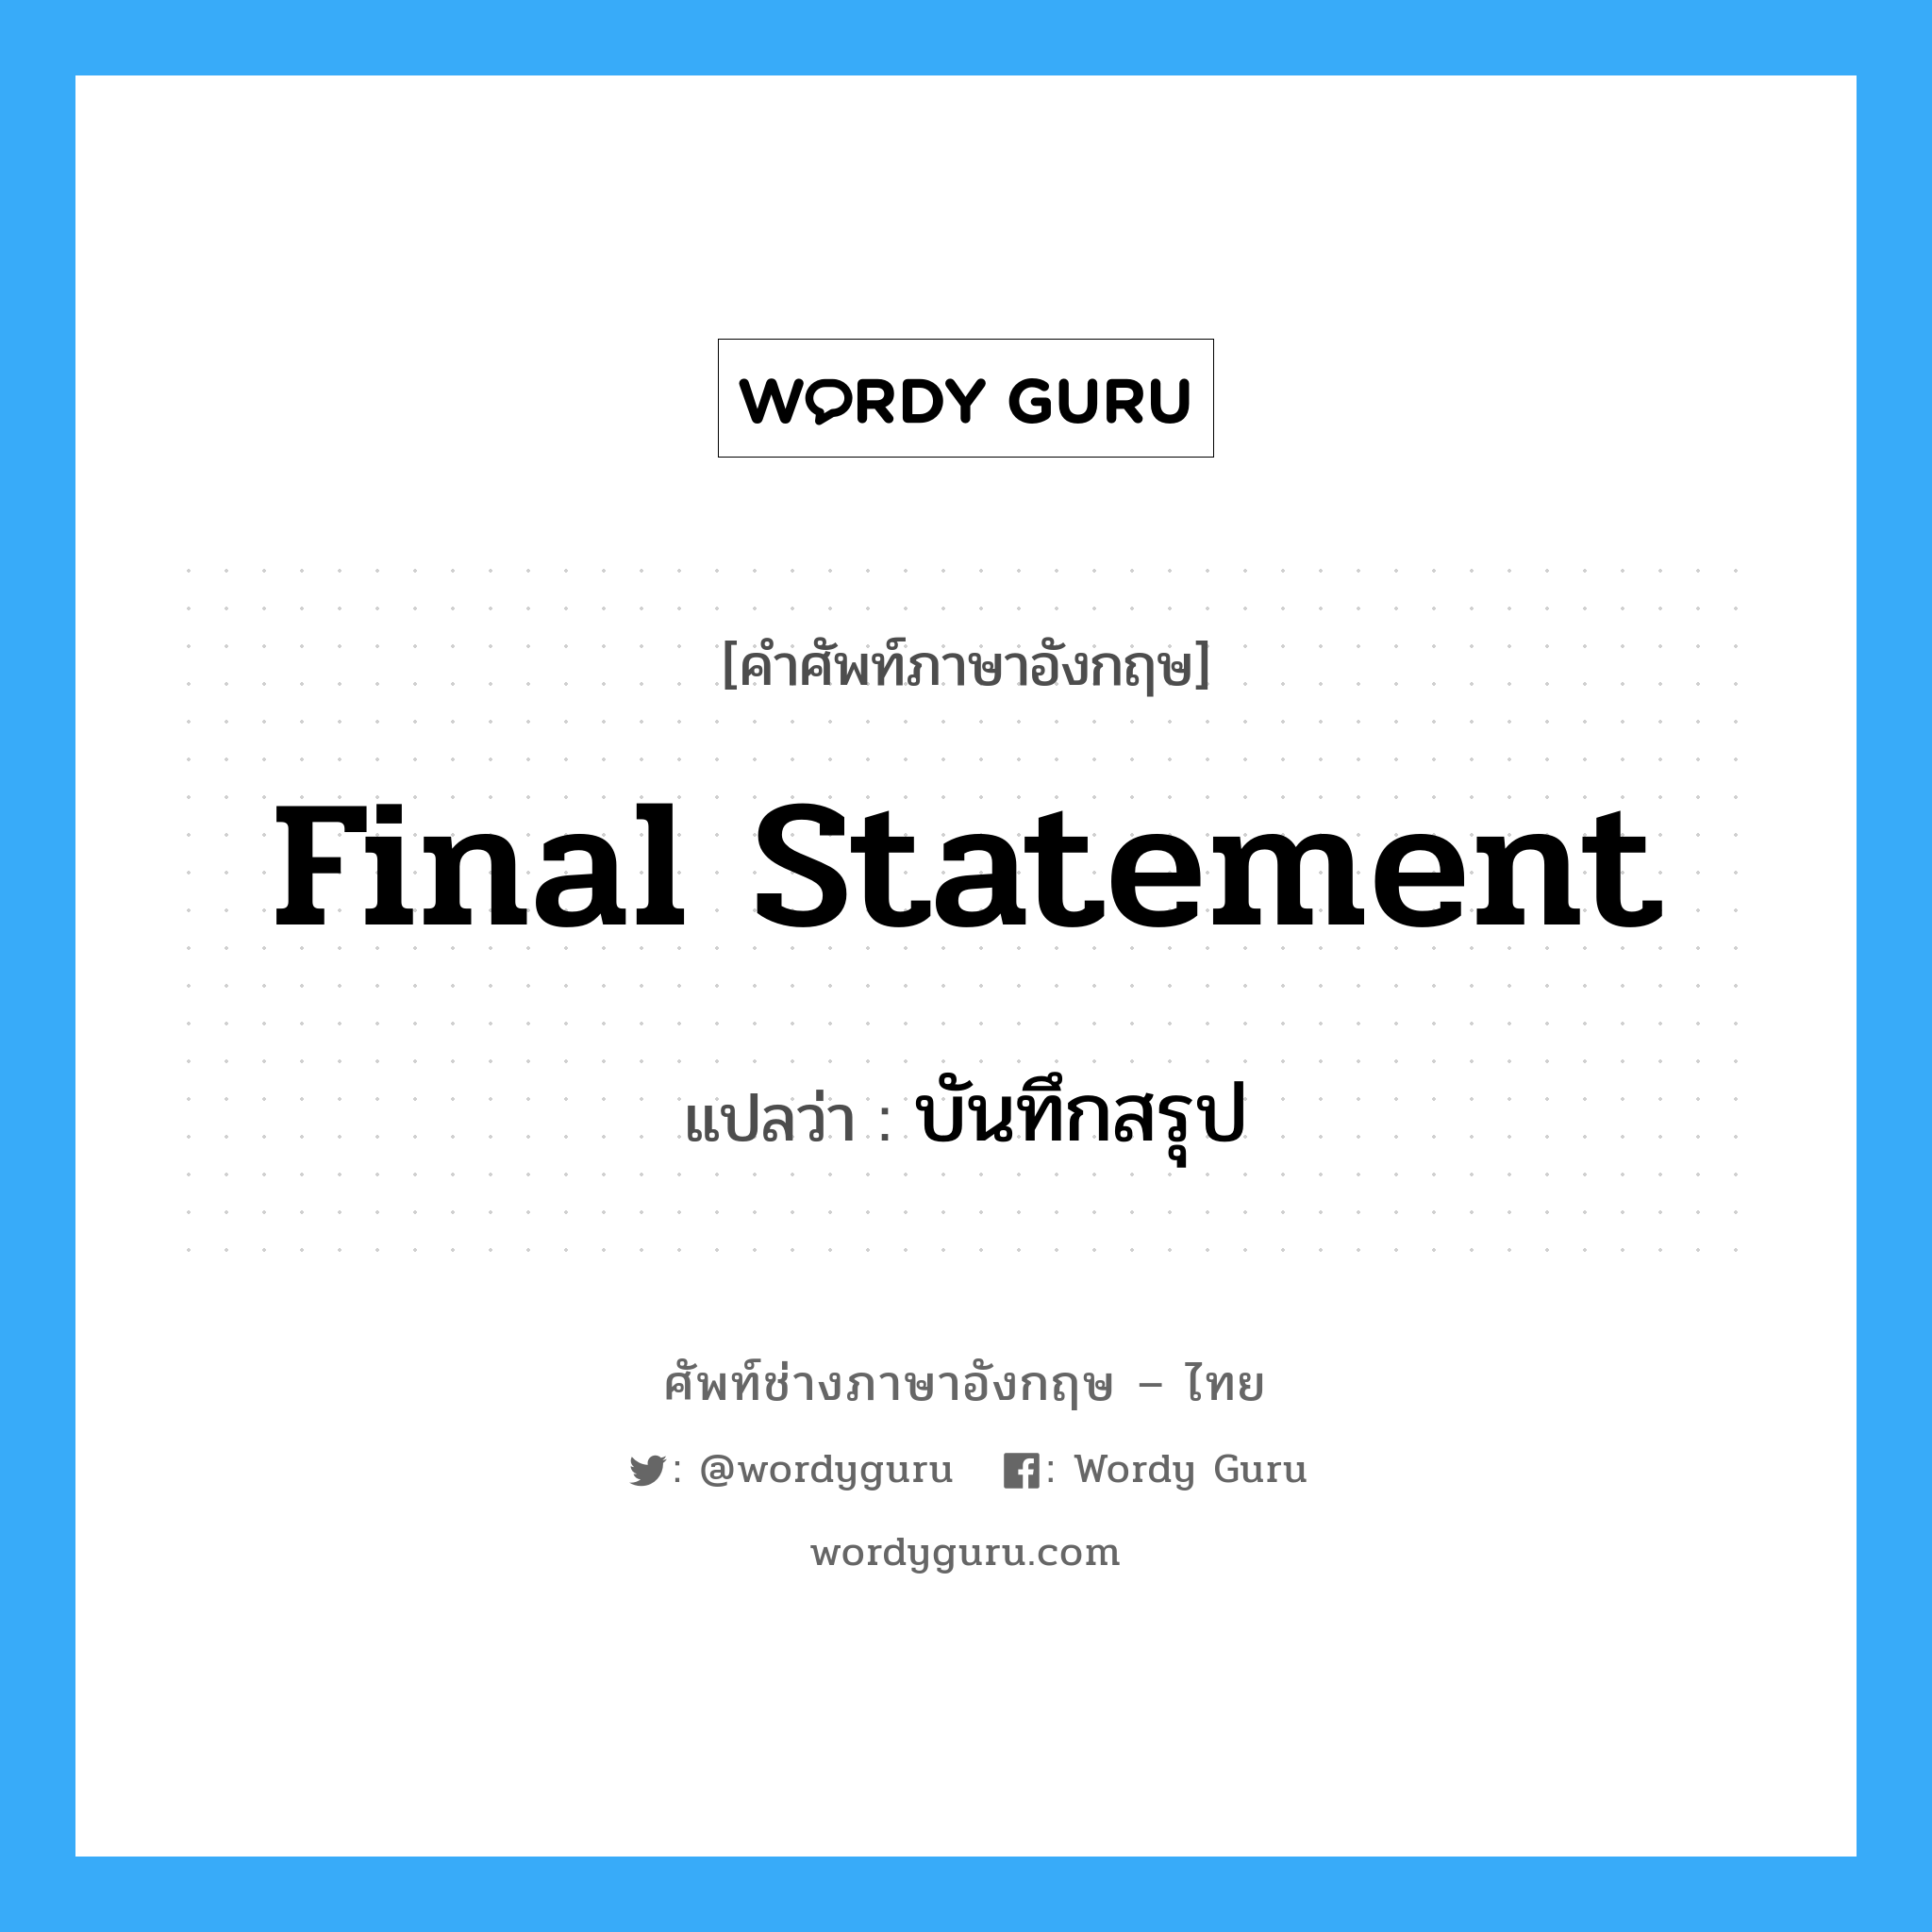 Final Statement แปลว่า?, คำศัพท์ช่างภาษาอังกฤษ - ไทย Final Statement คำศัพท์ภาษาอังกฤษ Final Statement แปลว่า บันทึกสรุป